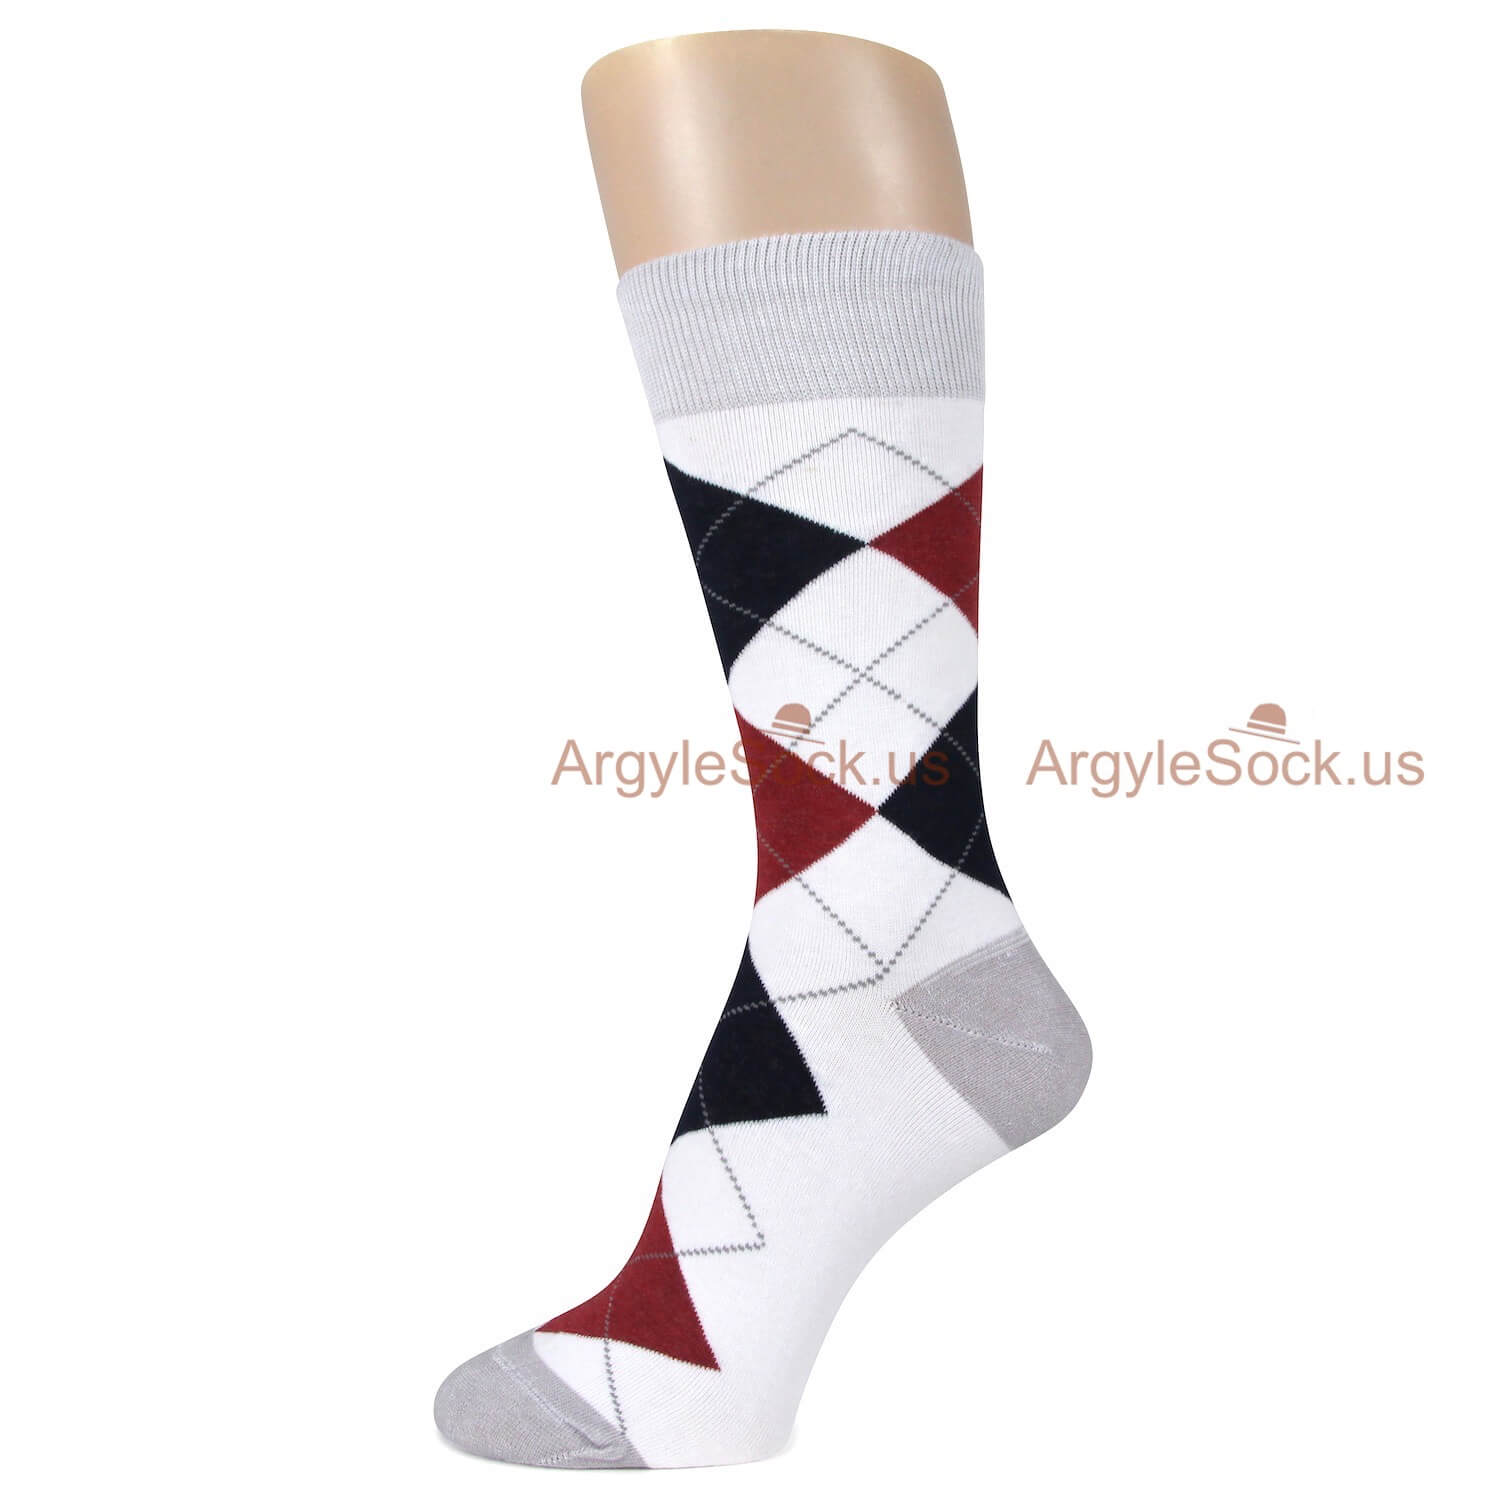 White Grey Black and Maroon Argyle Socks For Men